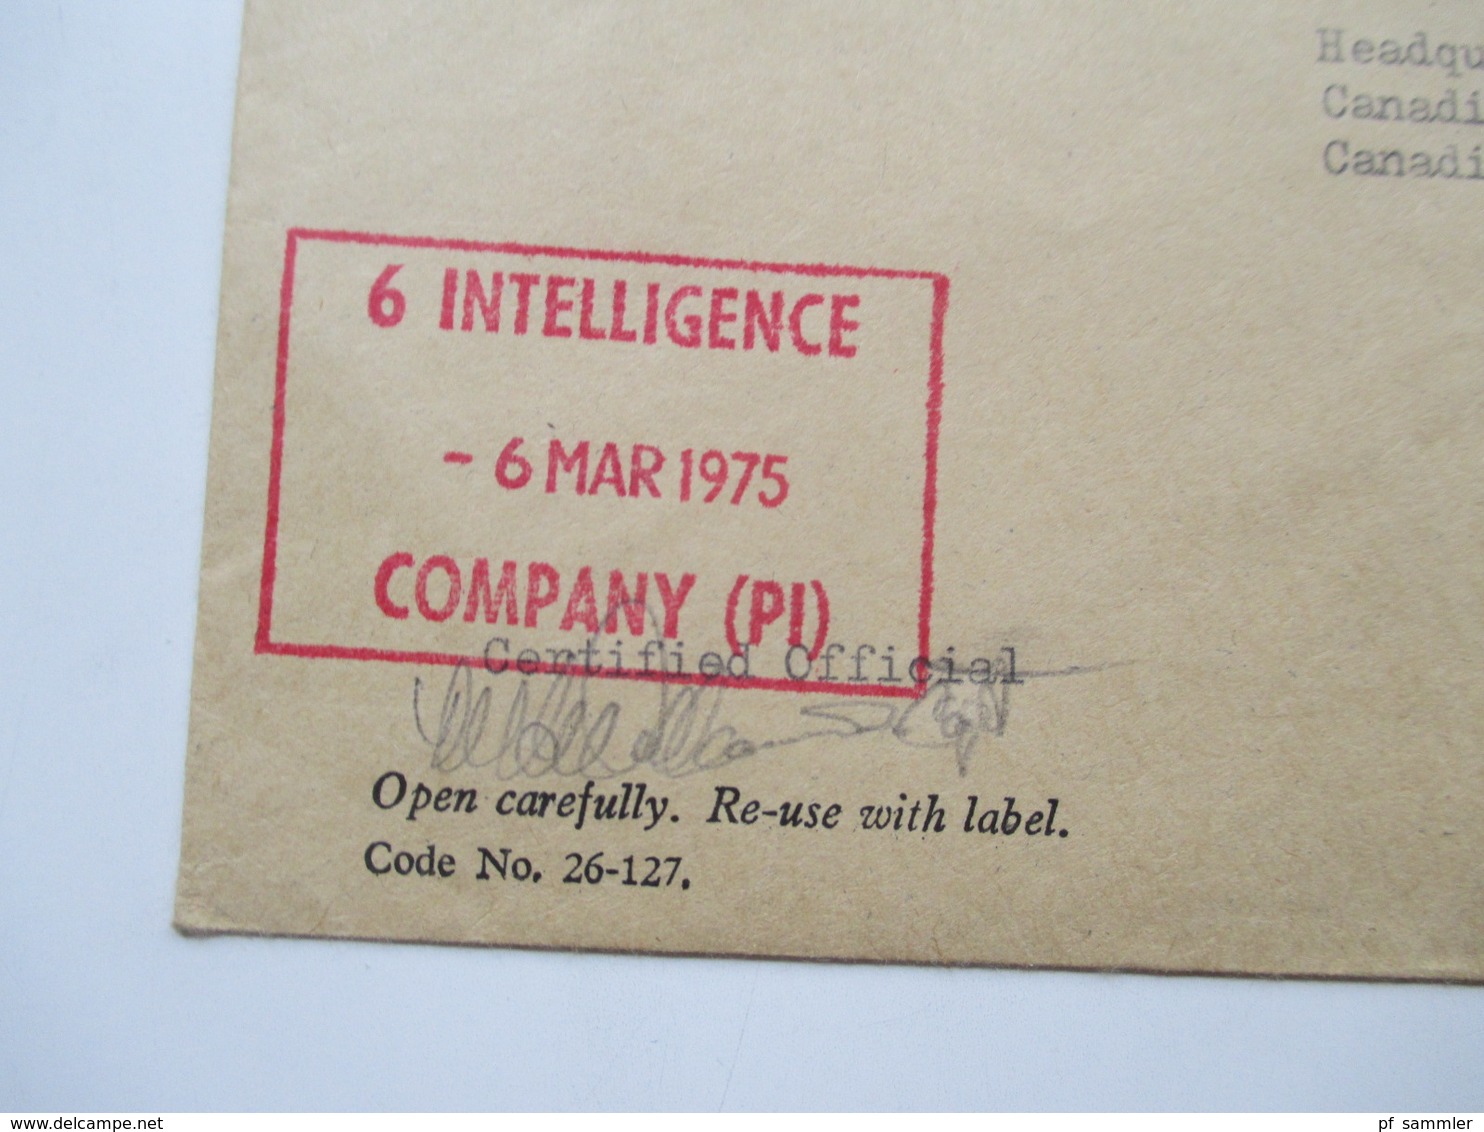 Kanada um 1970 CFPO 105 14 Belege General Delivery. Verschiedene Stempel. OHMS usw. Tolle Belege!